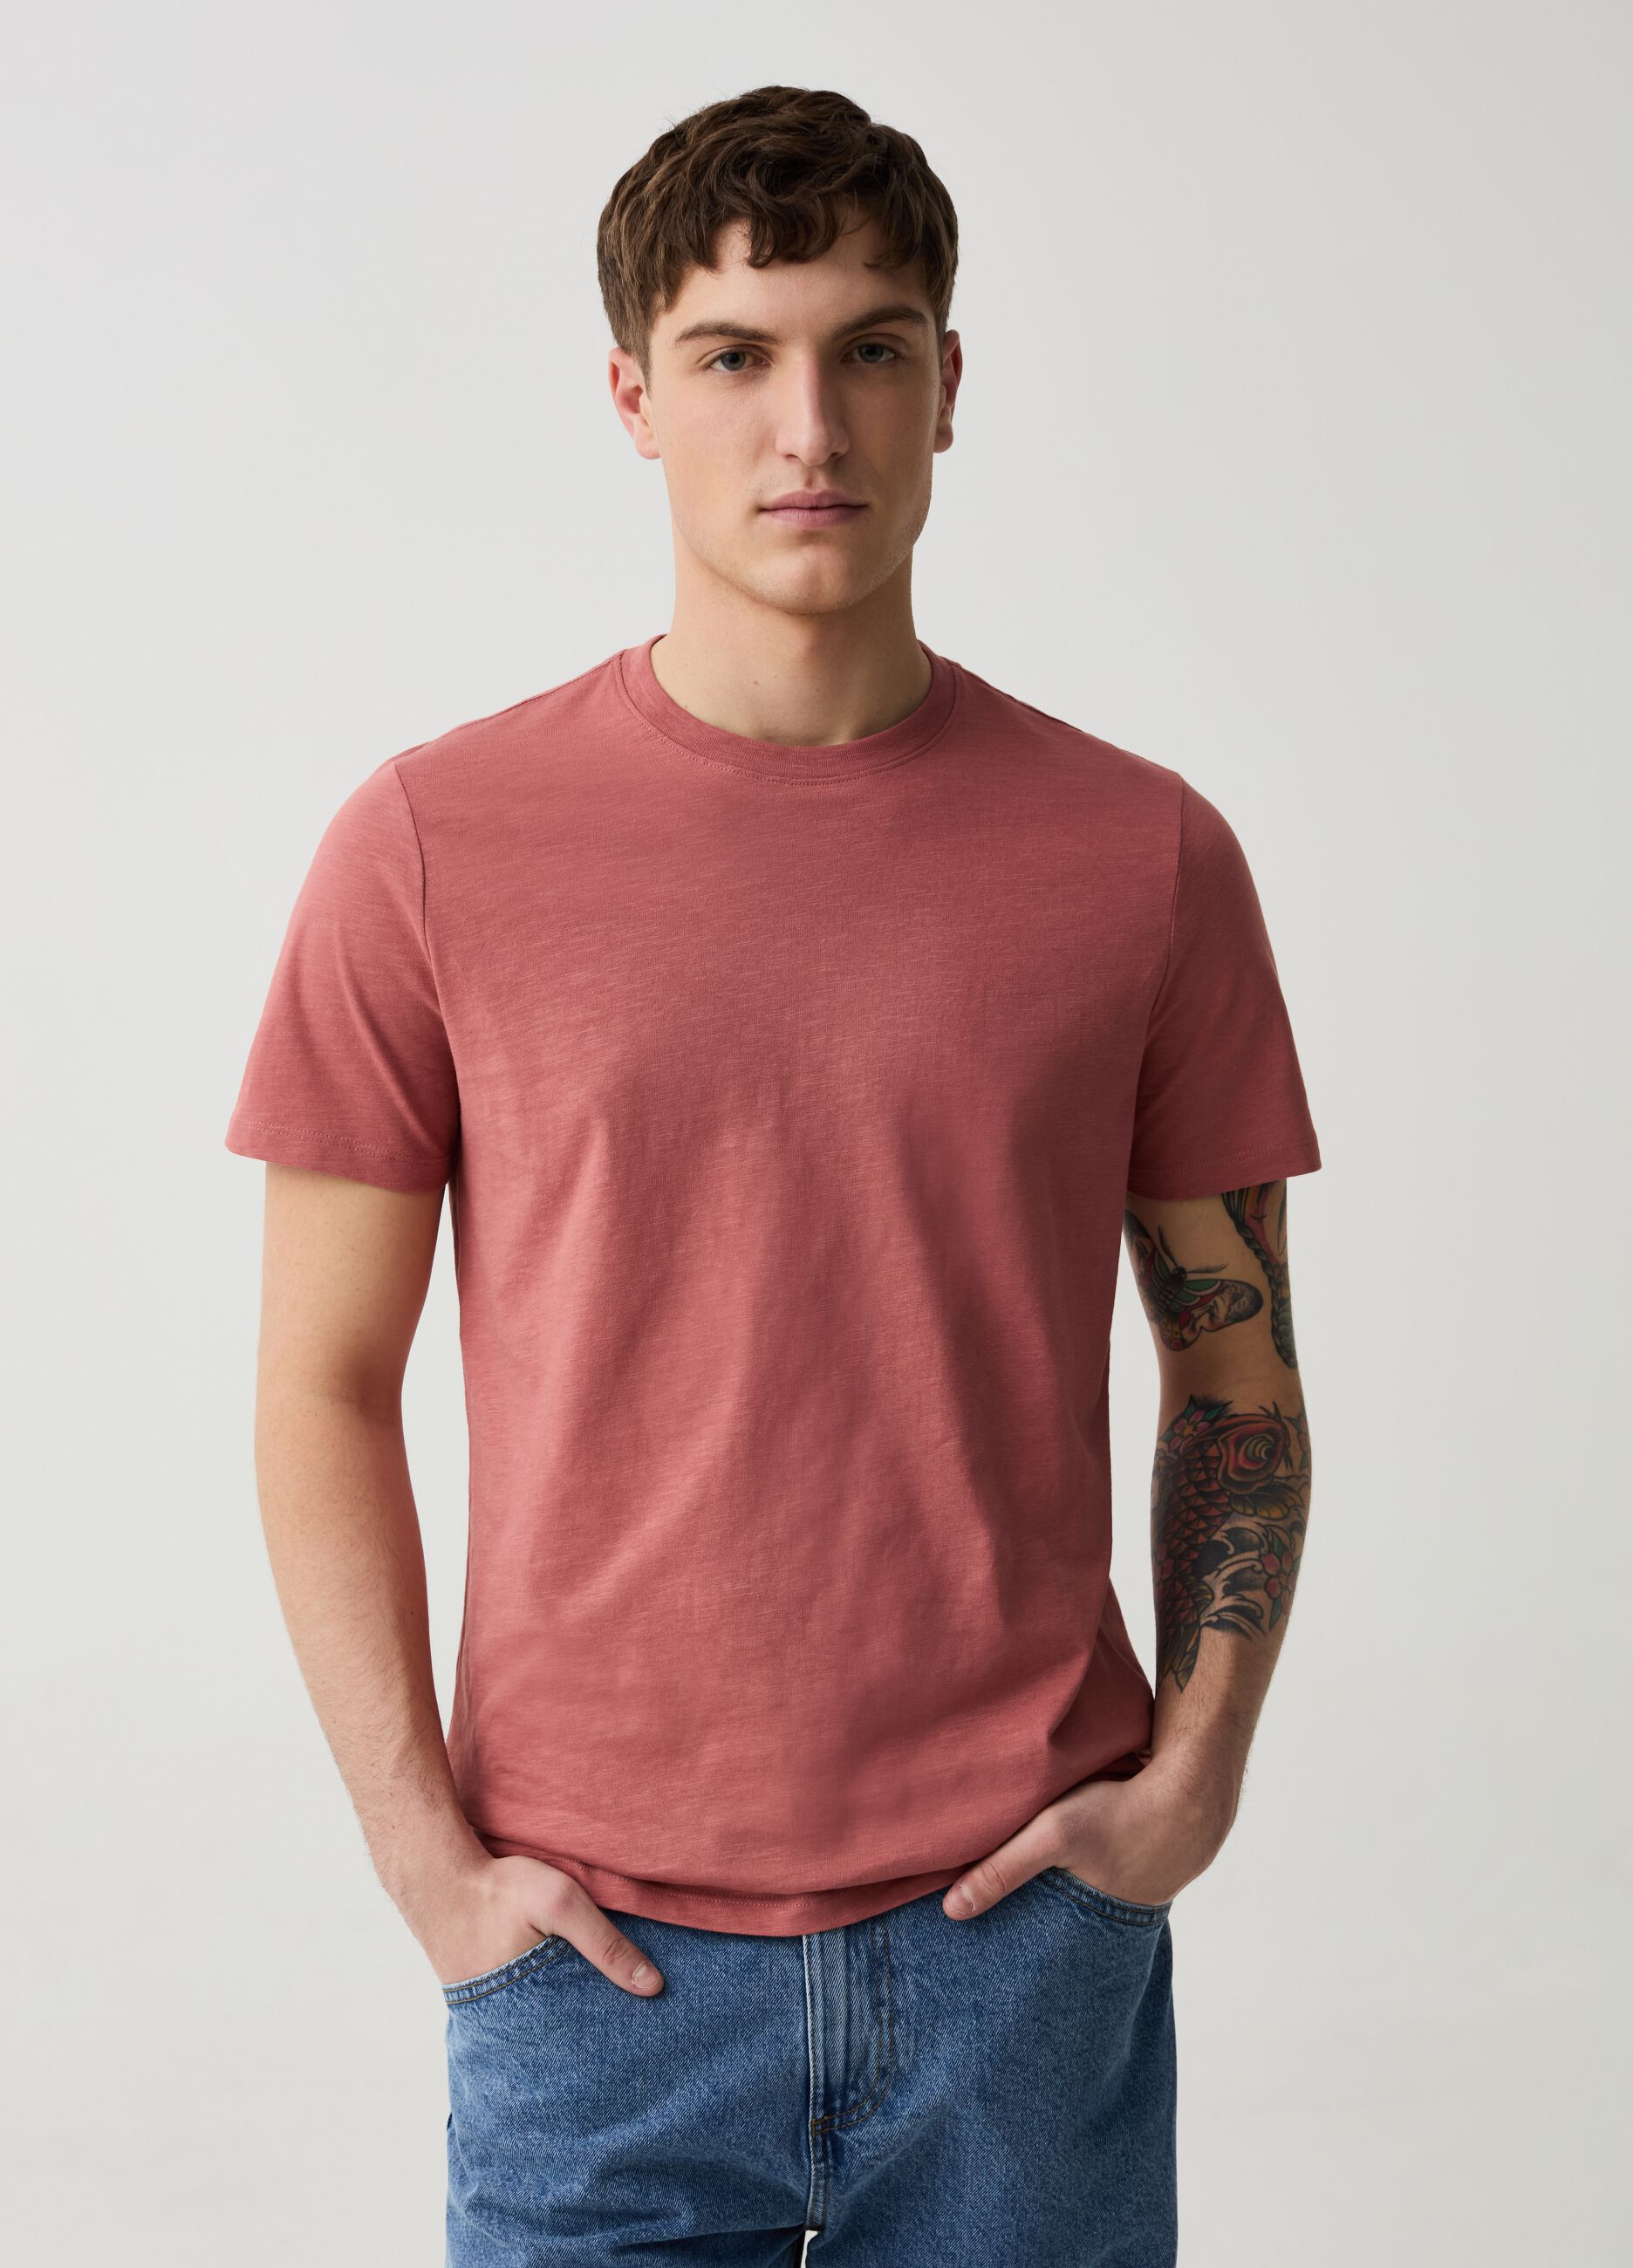 Camiseta cuello redondo de punto flameado